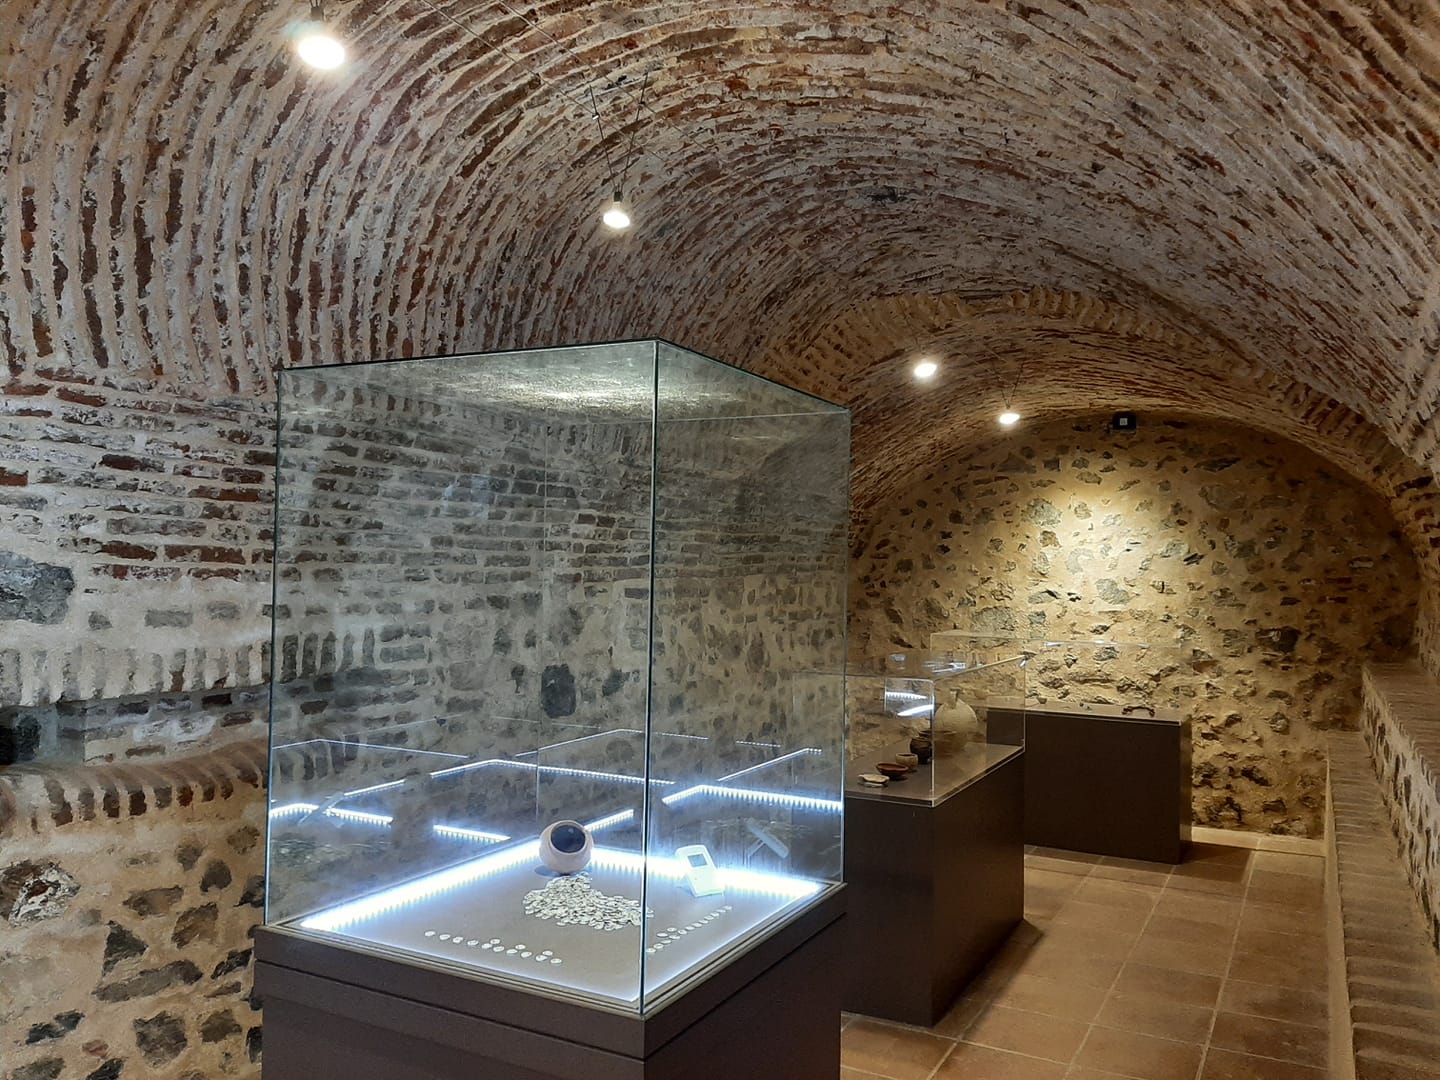 Colección Arqueológica Municipal de Aroche